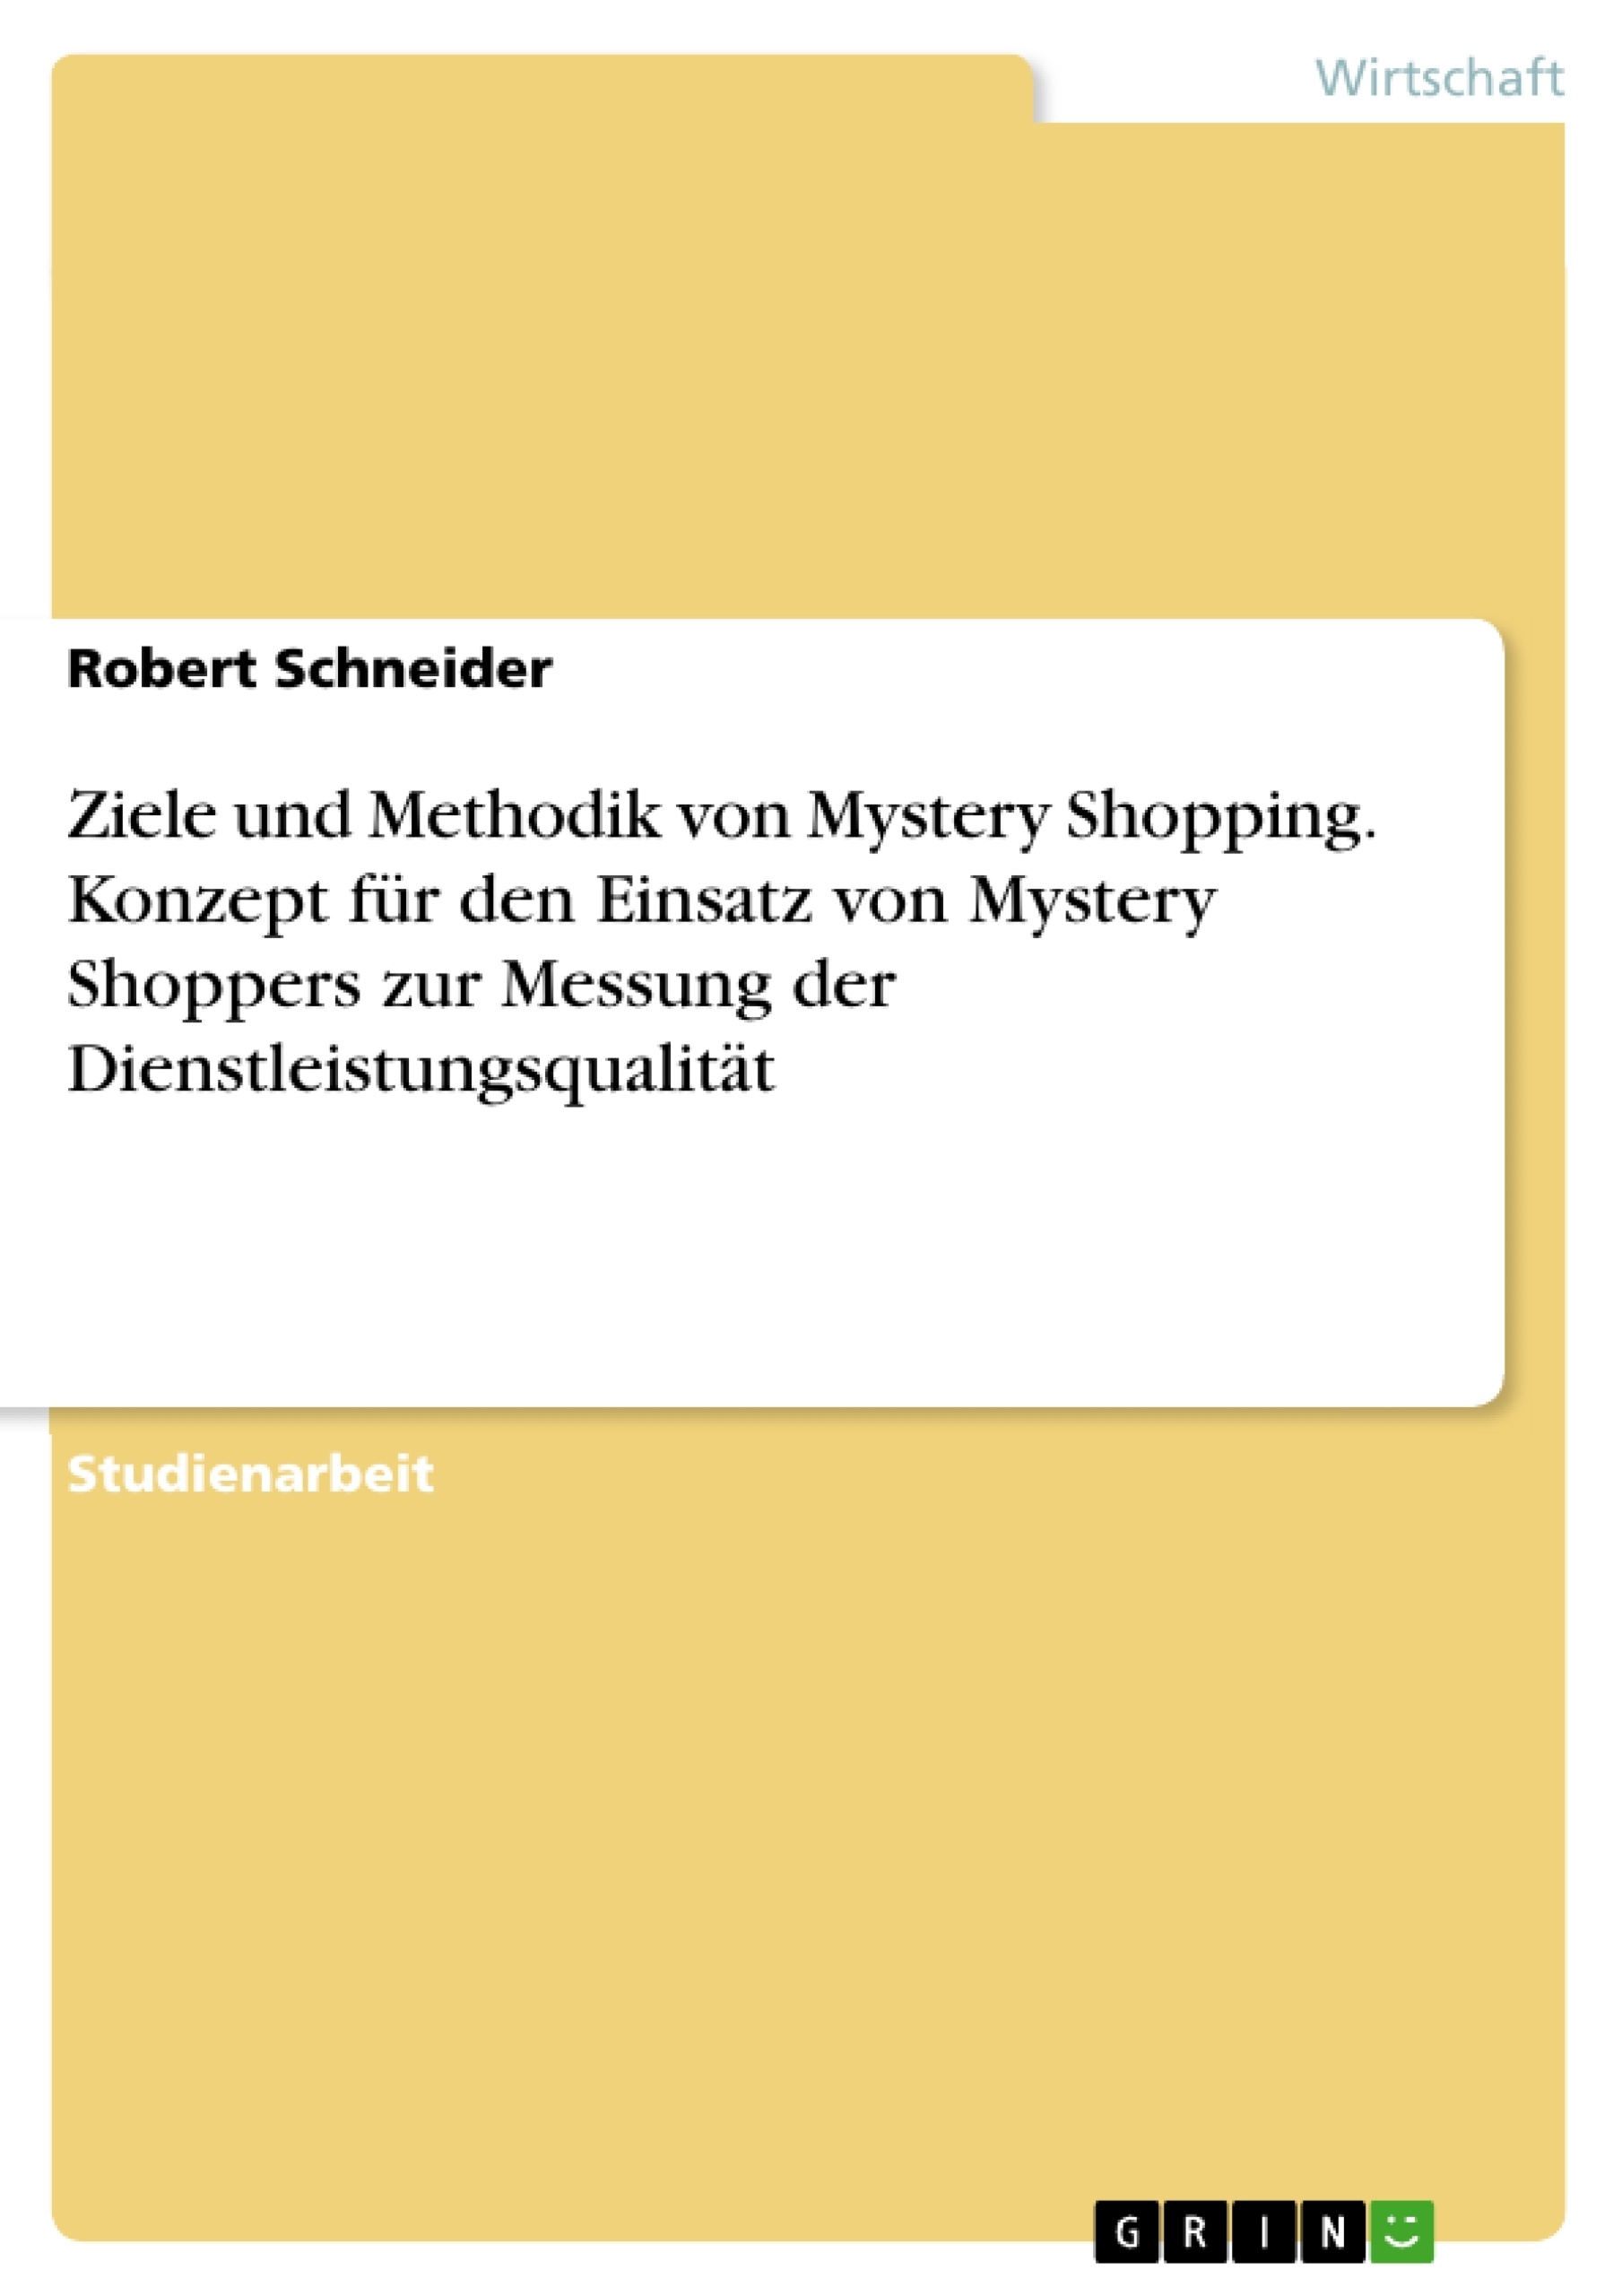 Title: Ziele und Methodik von Mystery Shopping. Konzept für den Einsatz von Mystery Shoppers zur Messung der Dienstleistungsqualität